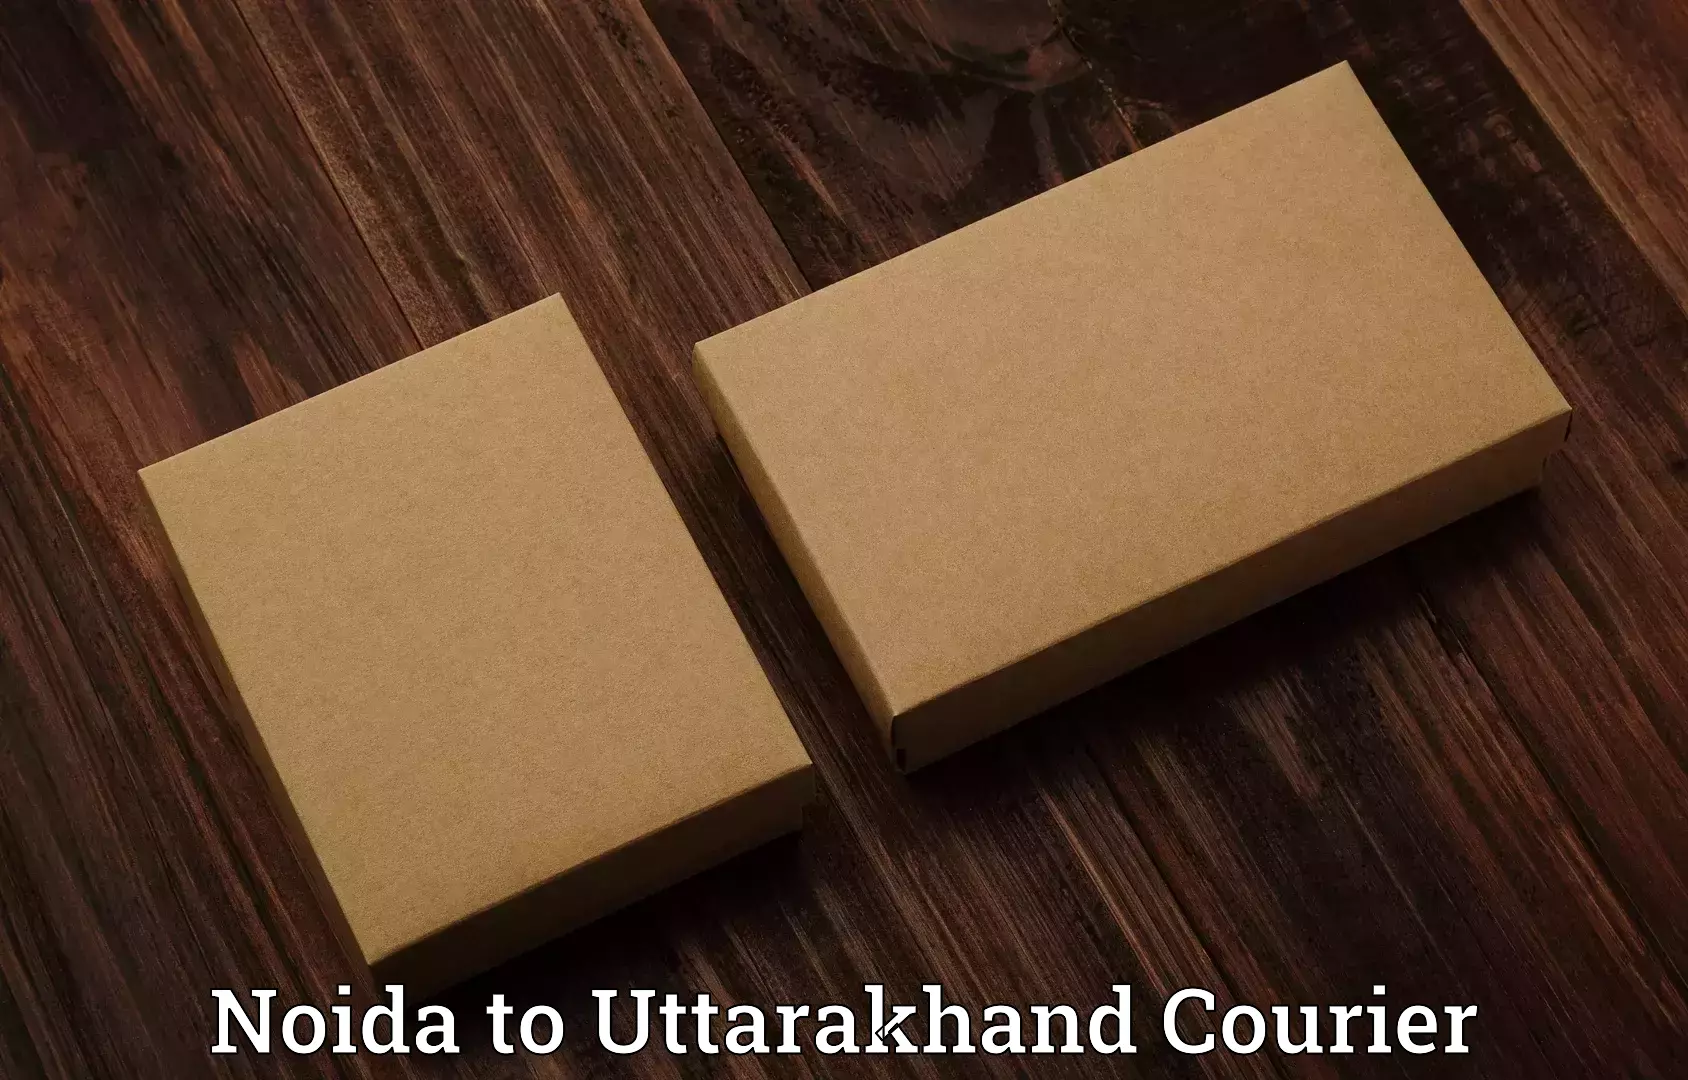 Luggage delivery network Noida to Uttarakhand